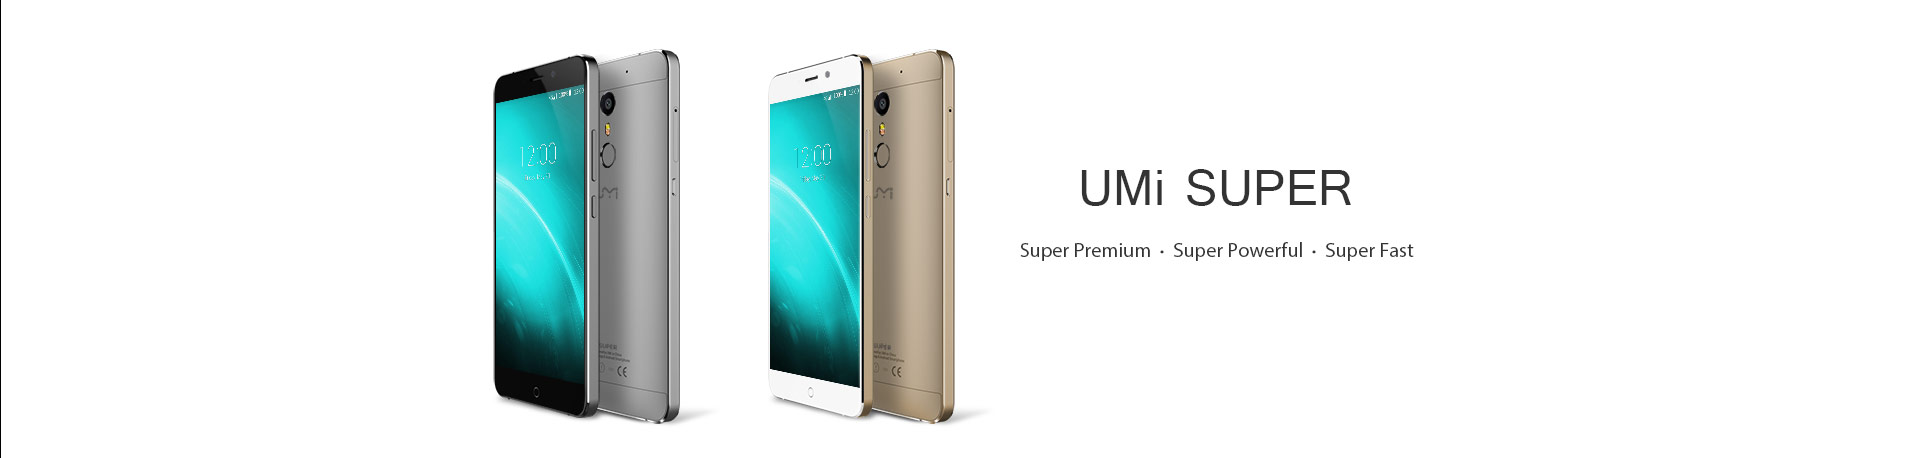 , [Deal Alert] UMI Super com Helio P10, 4GB de RAM e bateria de 4000mAh em promoção